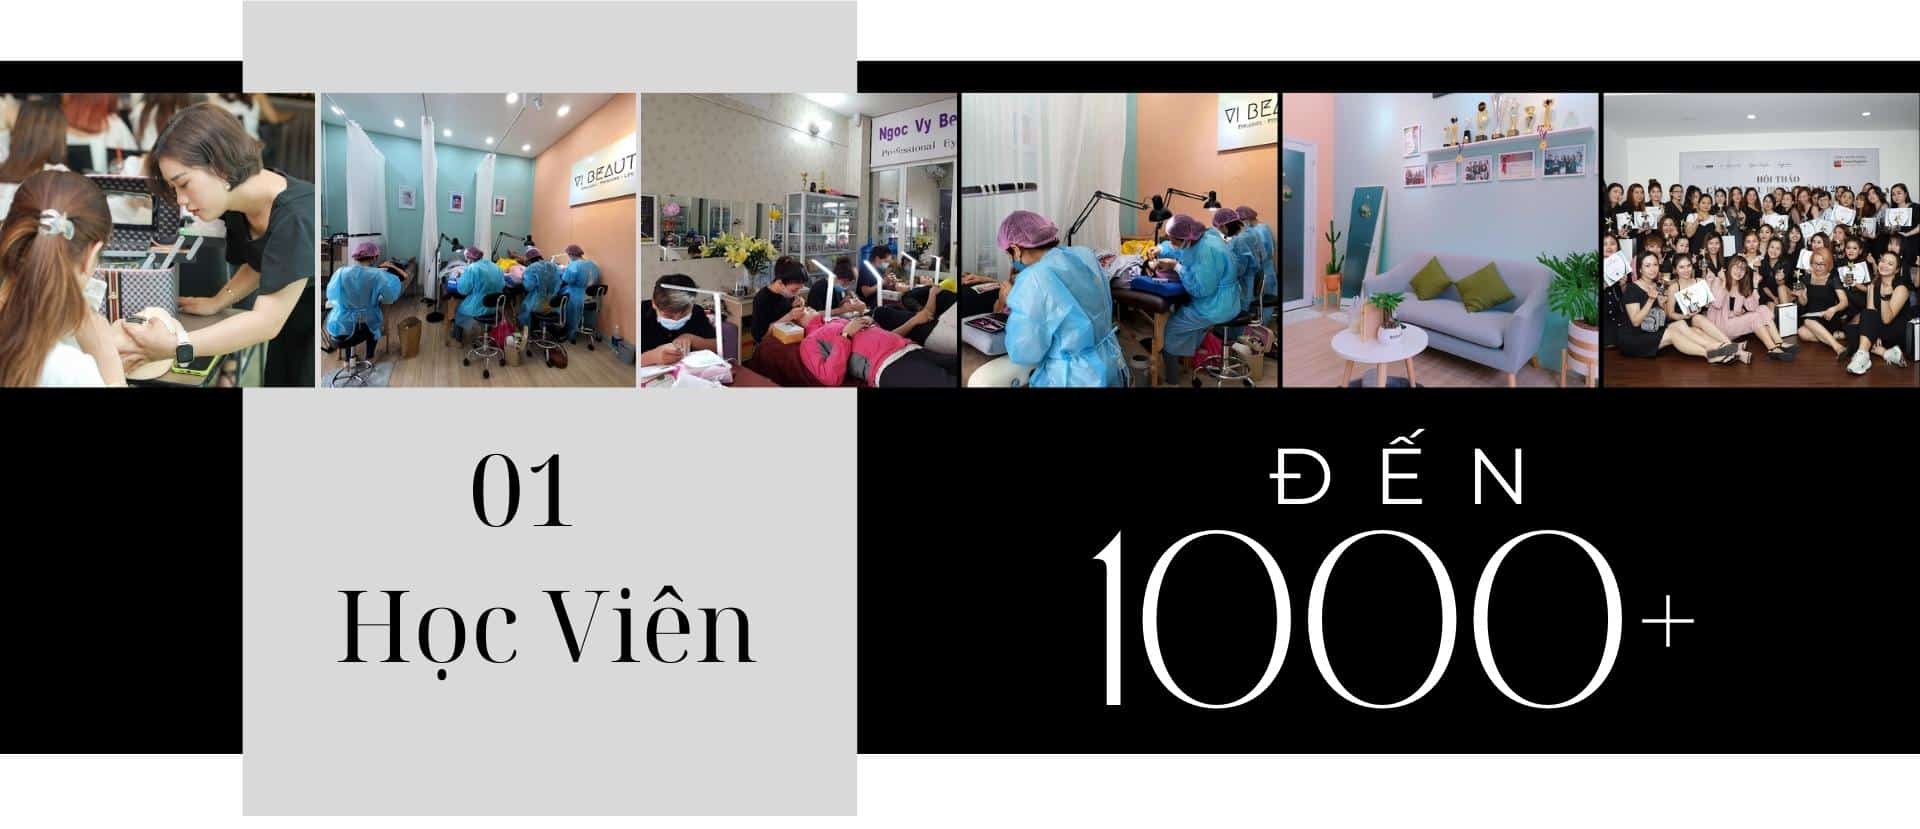 Master Vy Nguyễn - Vi beauty Academy dạy hơn 1000 học viên